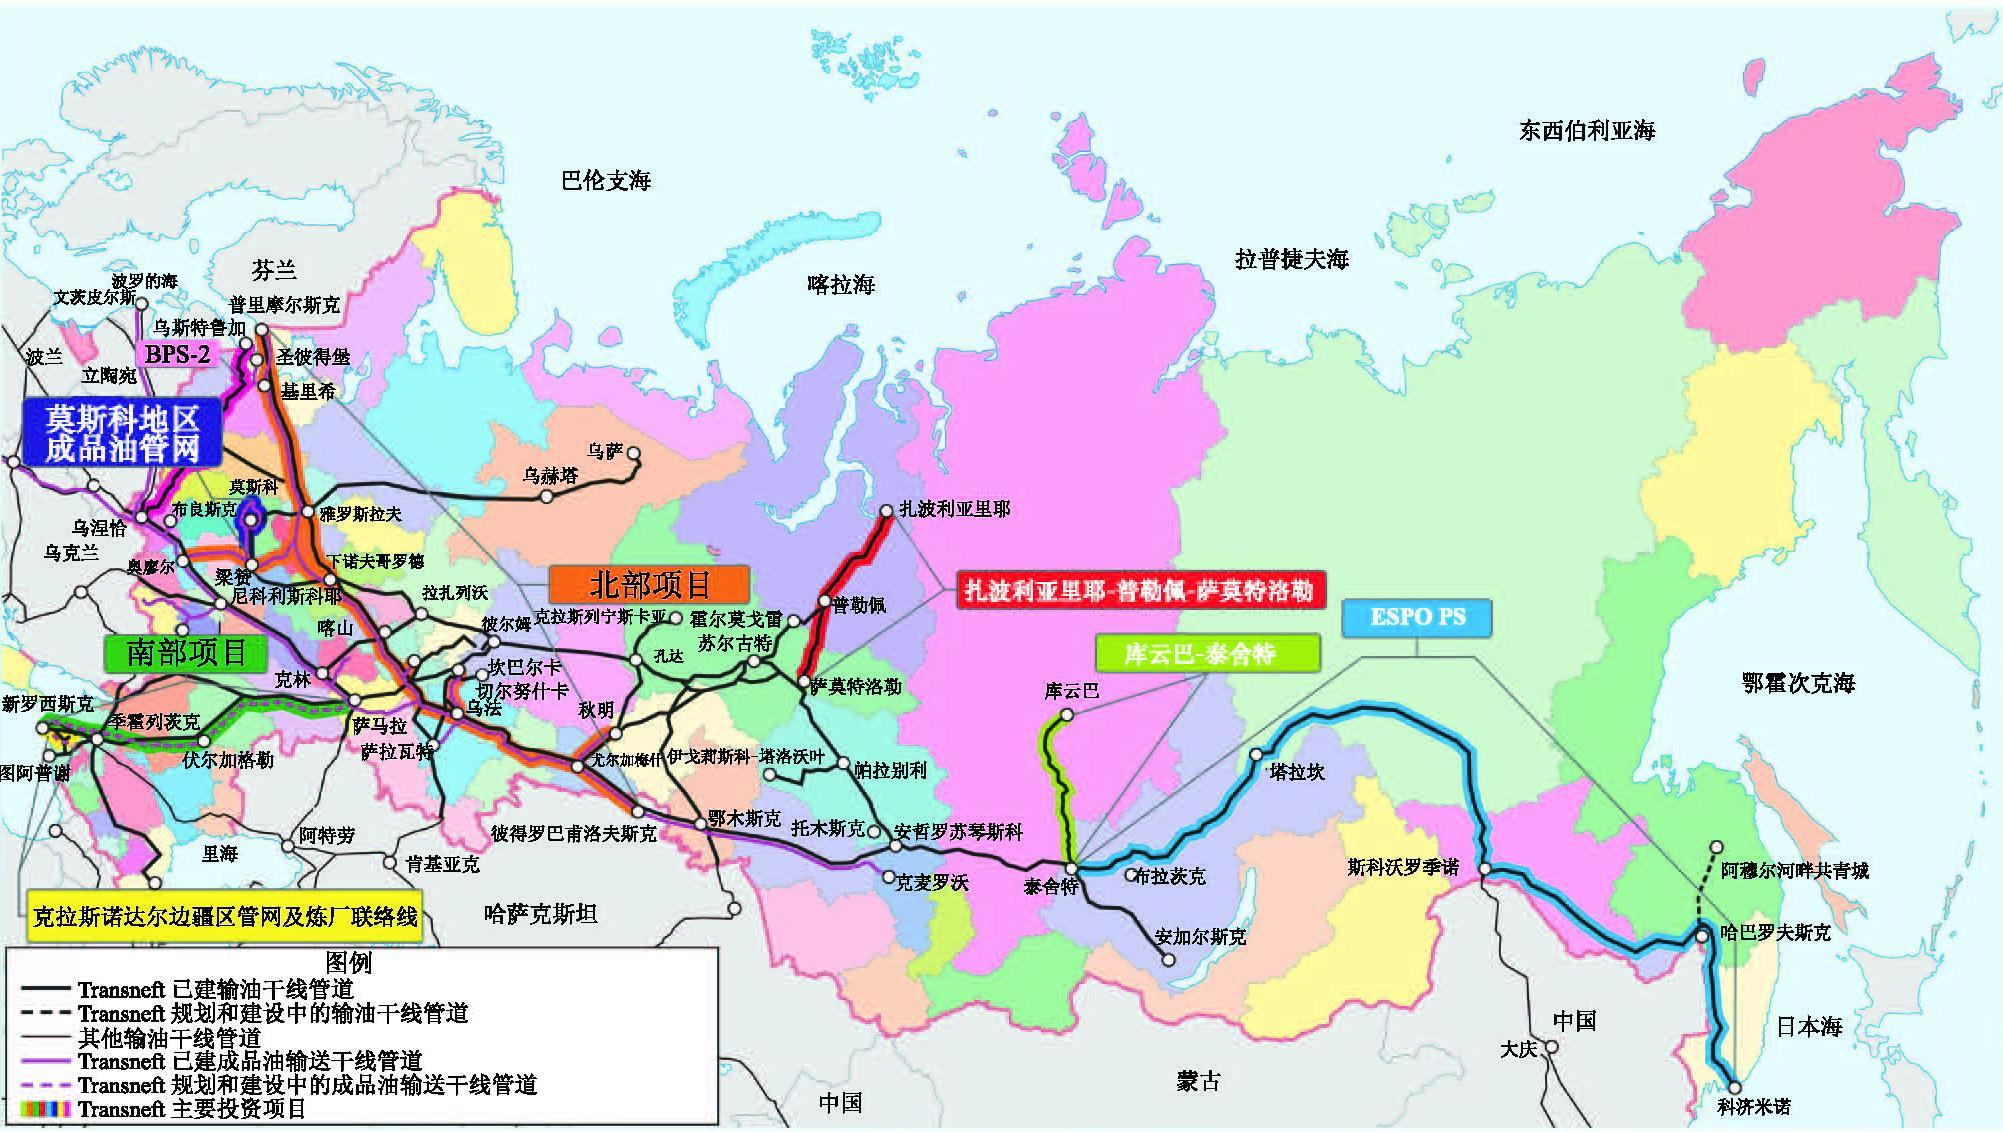 输油管道系统由俄罗斯石油管道运输公司管理,承担着近90%原油出口外输